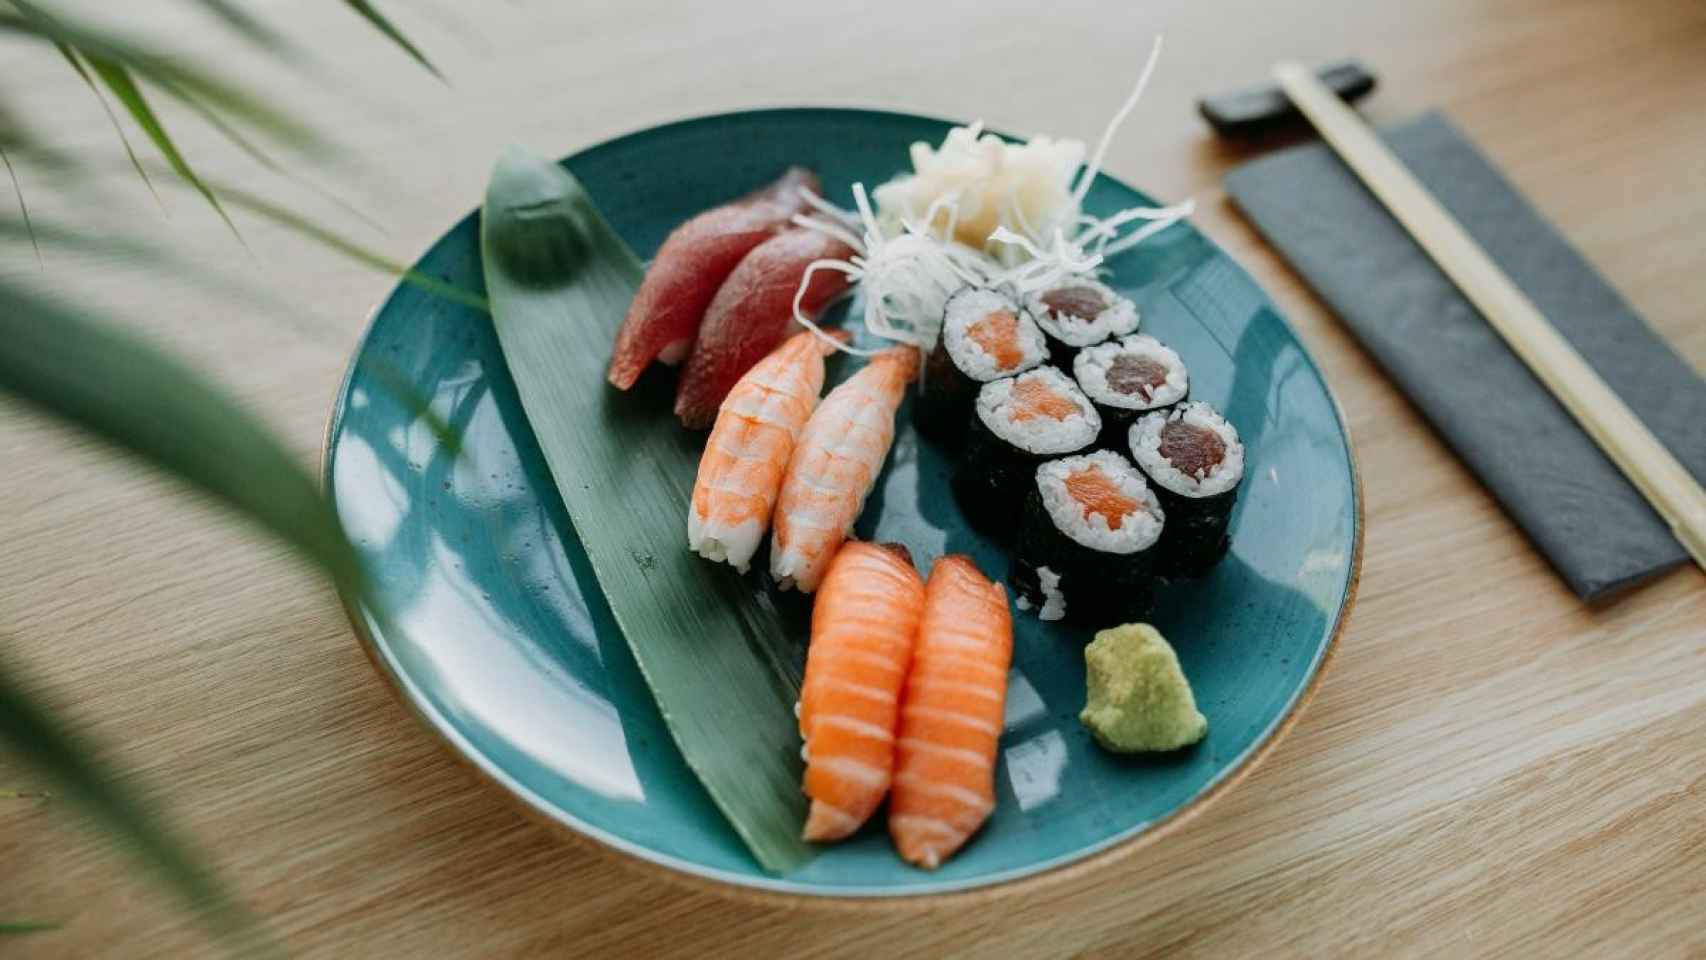 Un plato de sushi / Marta Filipczyk en UNSPLASH